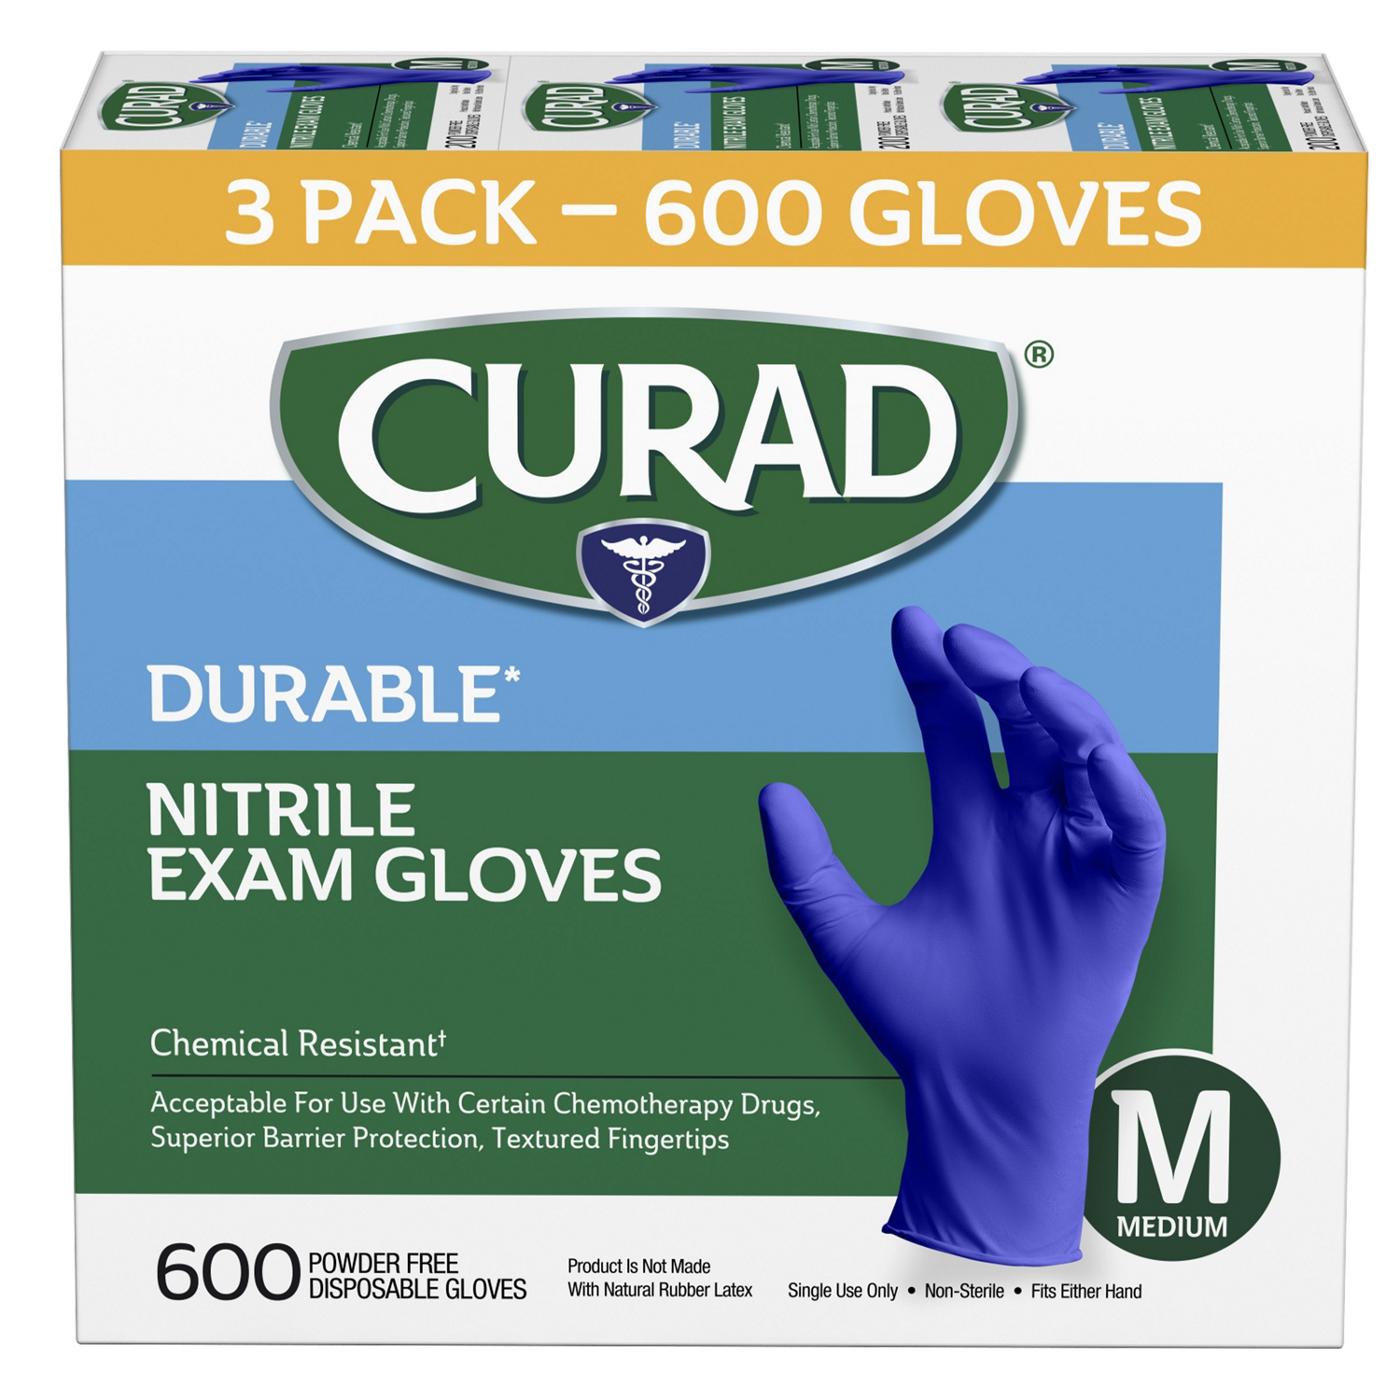 Curad Durable Nitrile Exam Gloves -  Medium; image 1 of 3